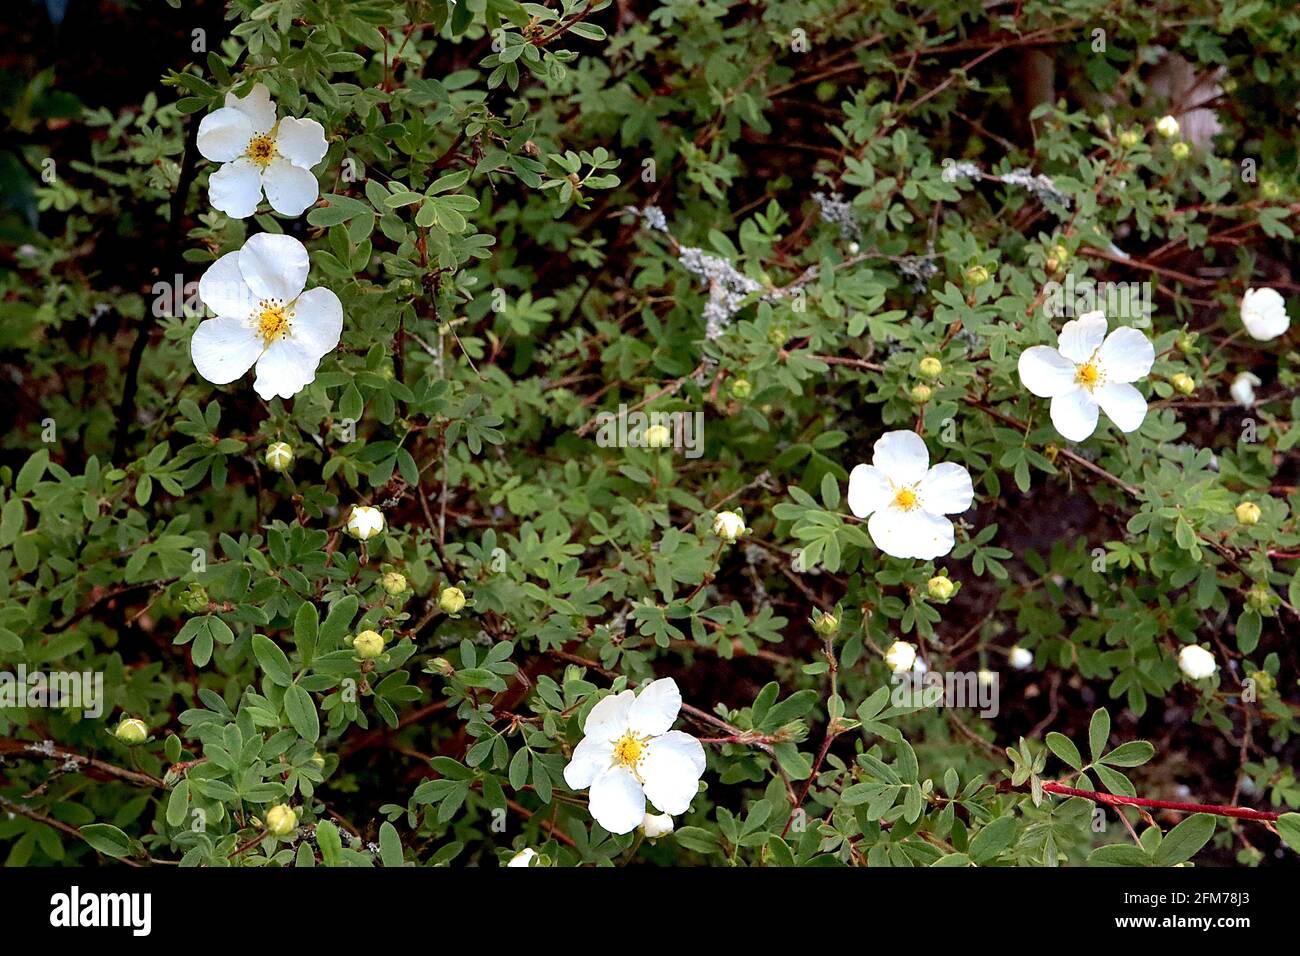 Cistus x obtusifolius ‘thrive’ rock rose THRIVE – fiori bianchi e piccole foglie di verde scuro, maggio, Inghilterra, Regno Unito Foto Stock